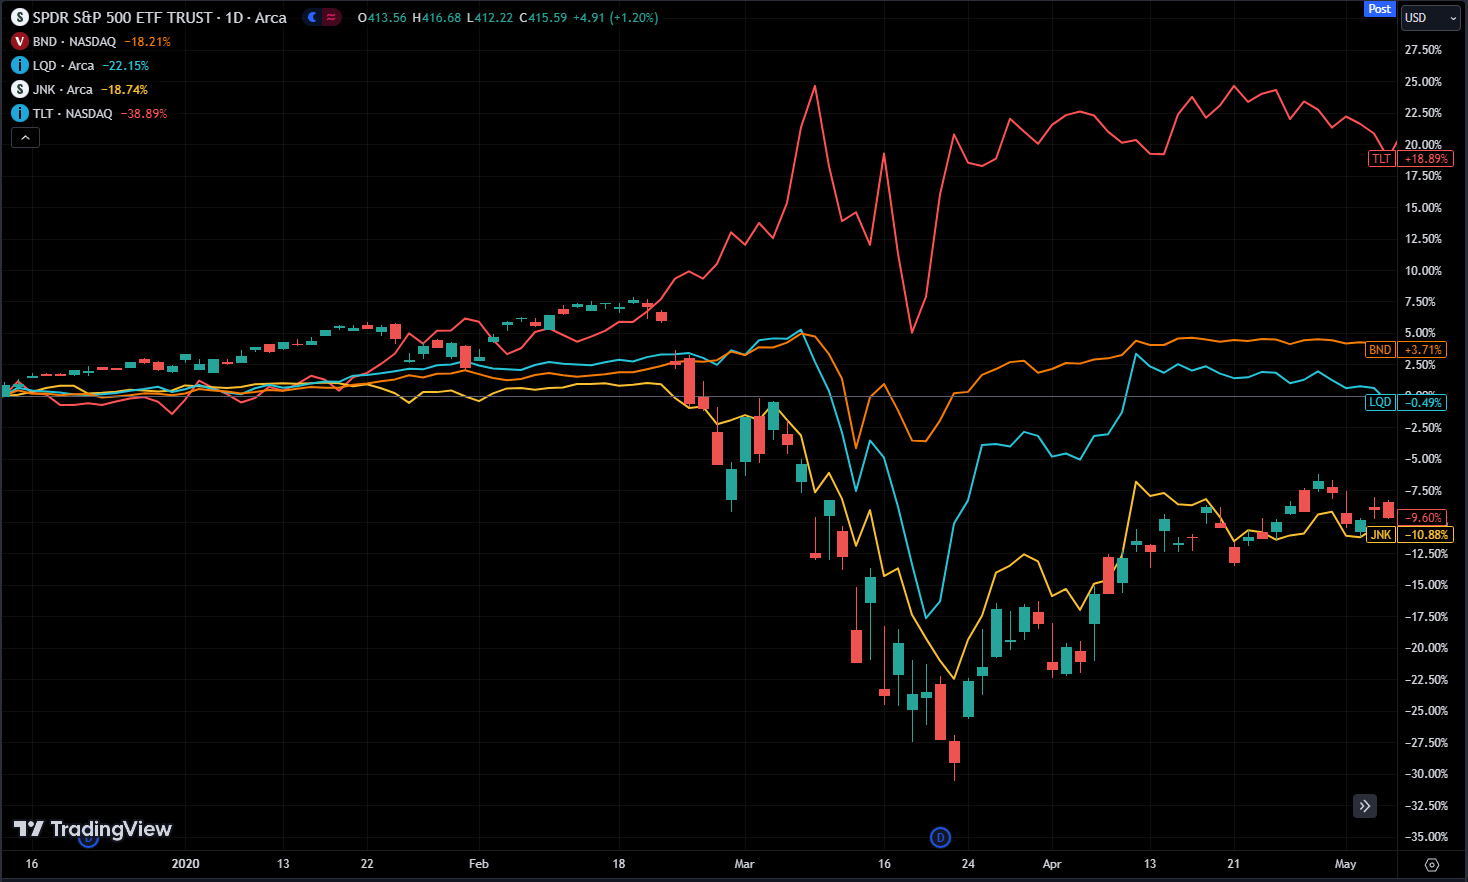 2020 market crash stock price vs bond